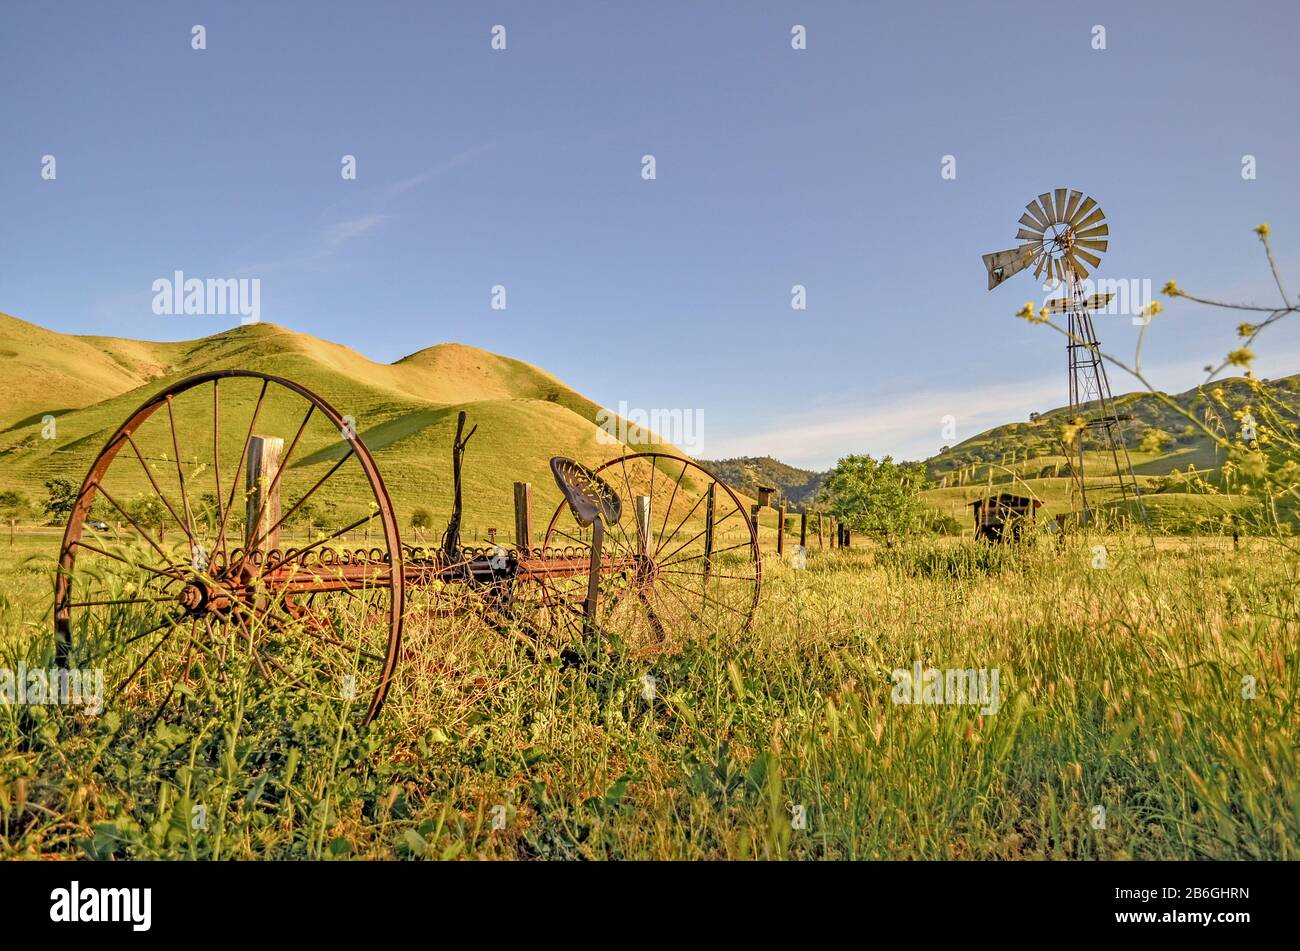 Equipo agrícola oxidado abandonado y molino de viento con campo verde y colinas, Black Diamond Mines, Nortonville, Antioch, Pittsburg, California, EE.UU Foto de stock